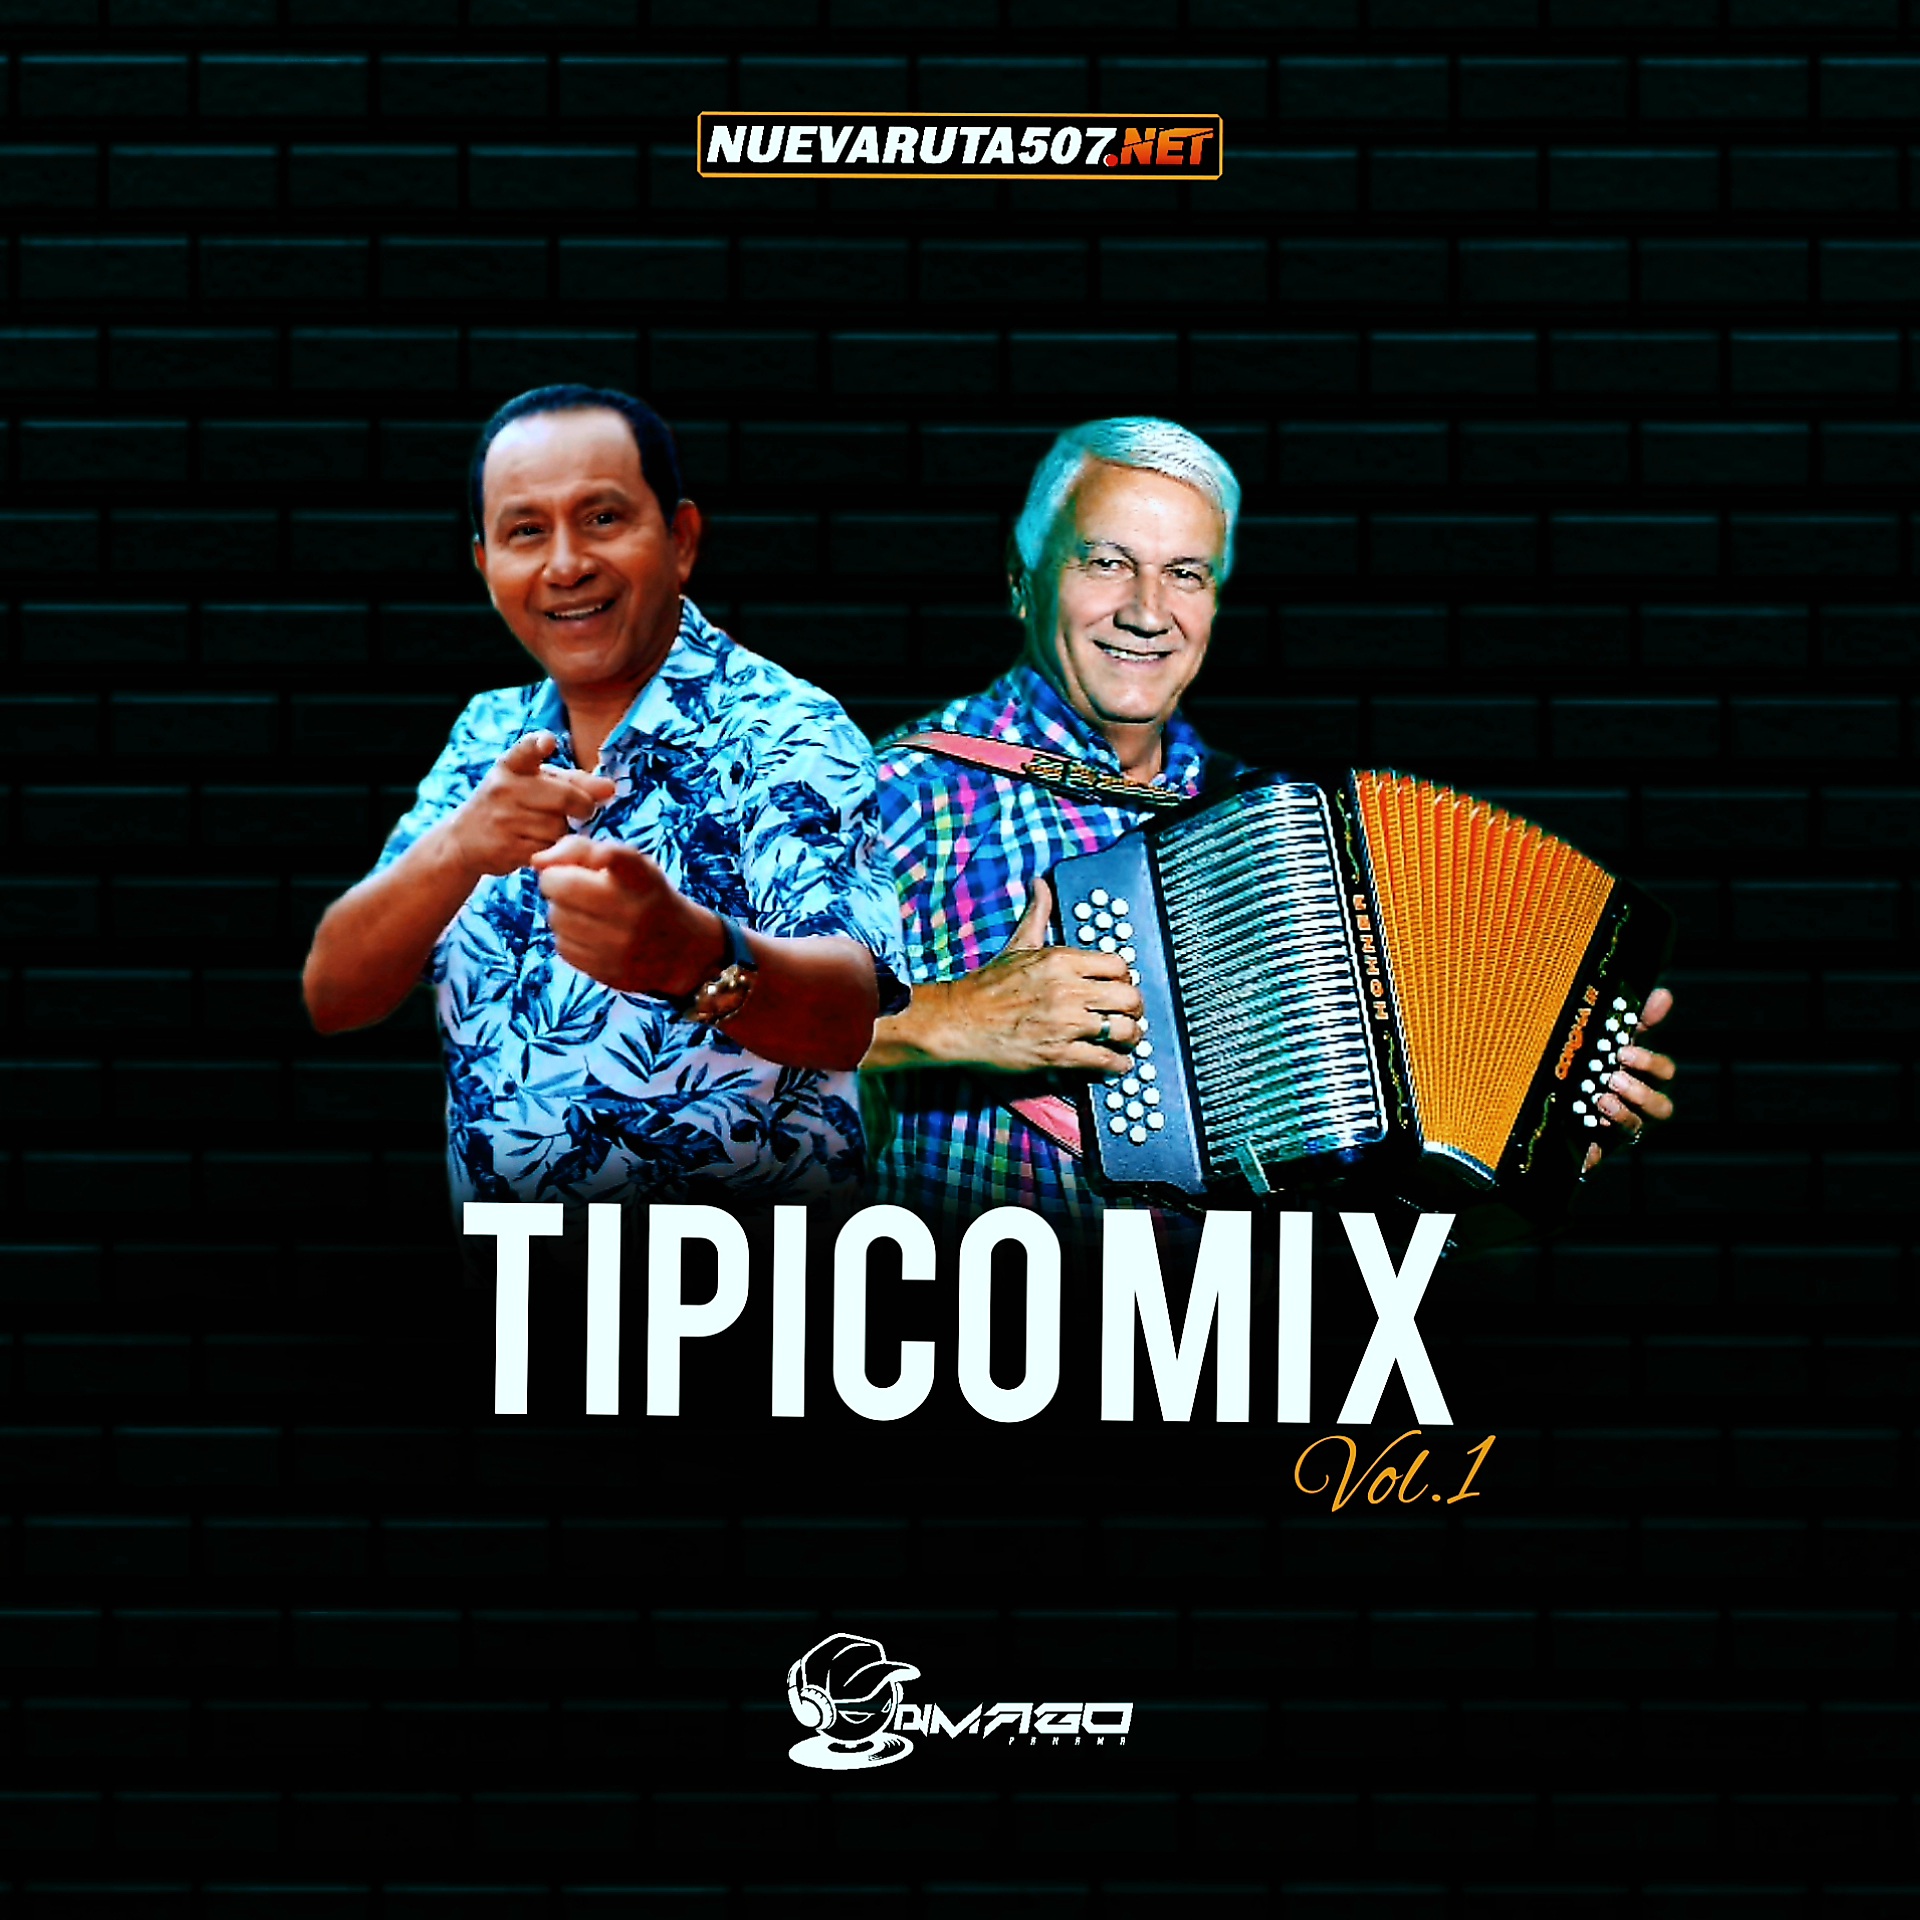 Tipico Mix Vol.1 Dj Mago 507 (2023).mp3